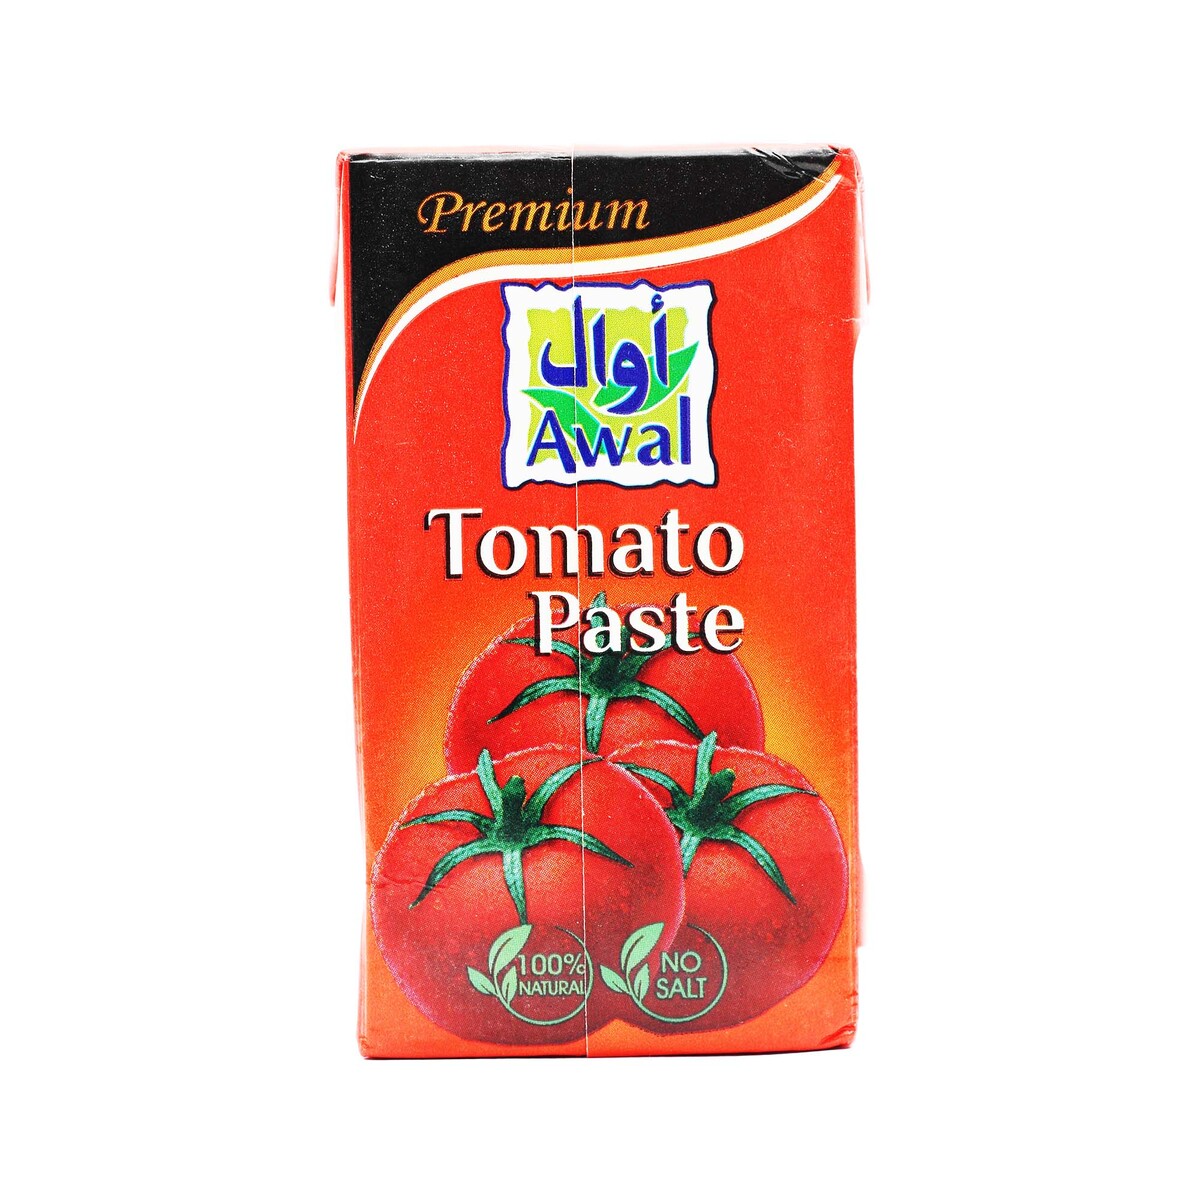 Awal Tomato Paste 8 x 135g